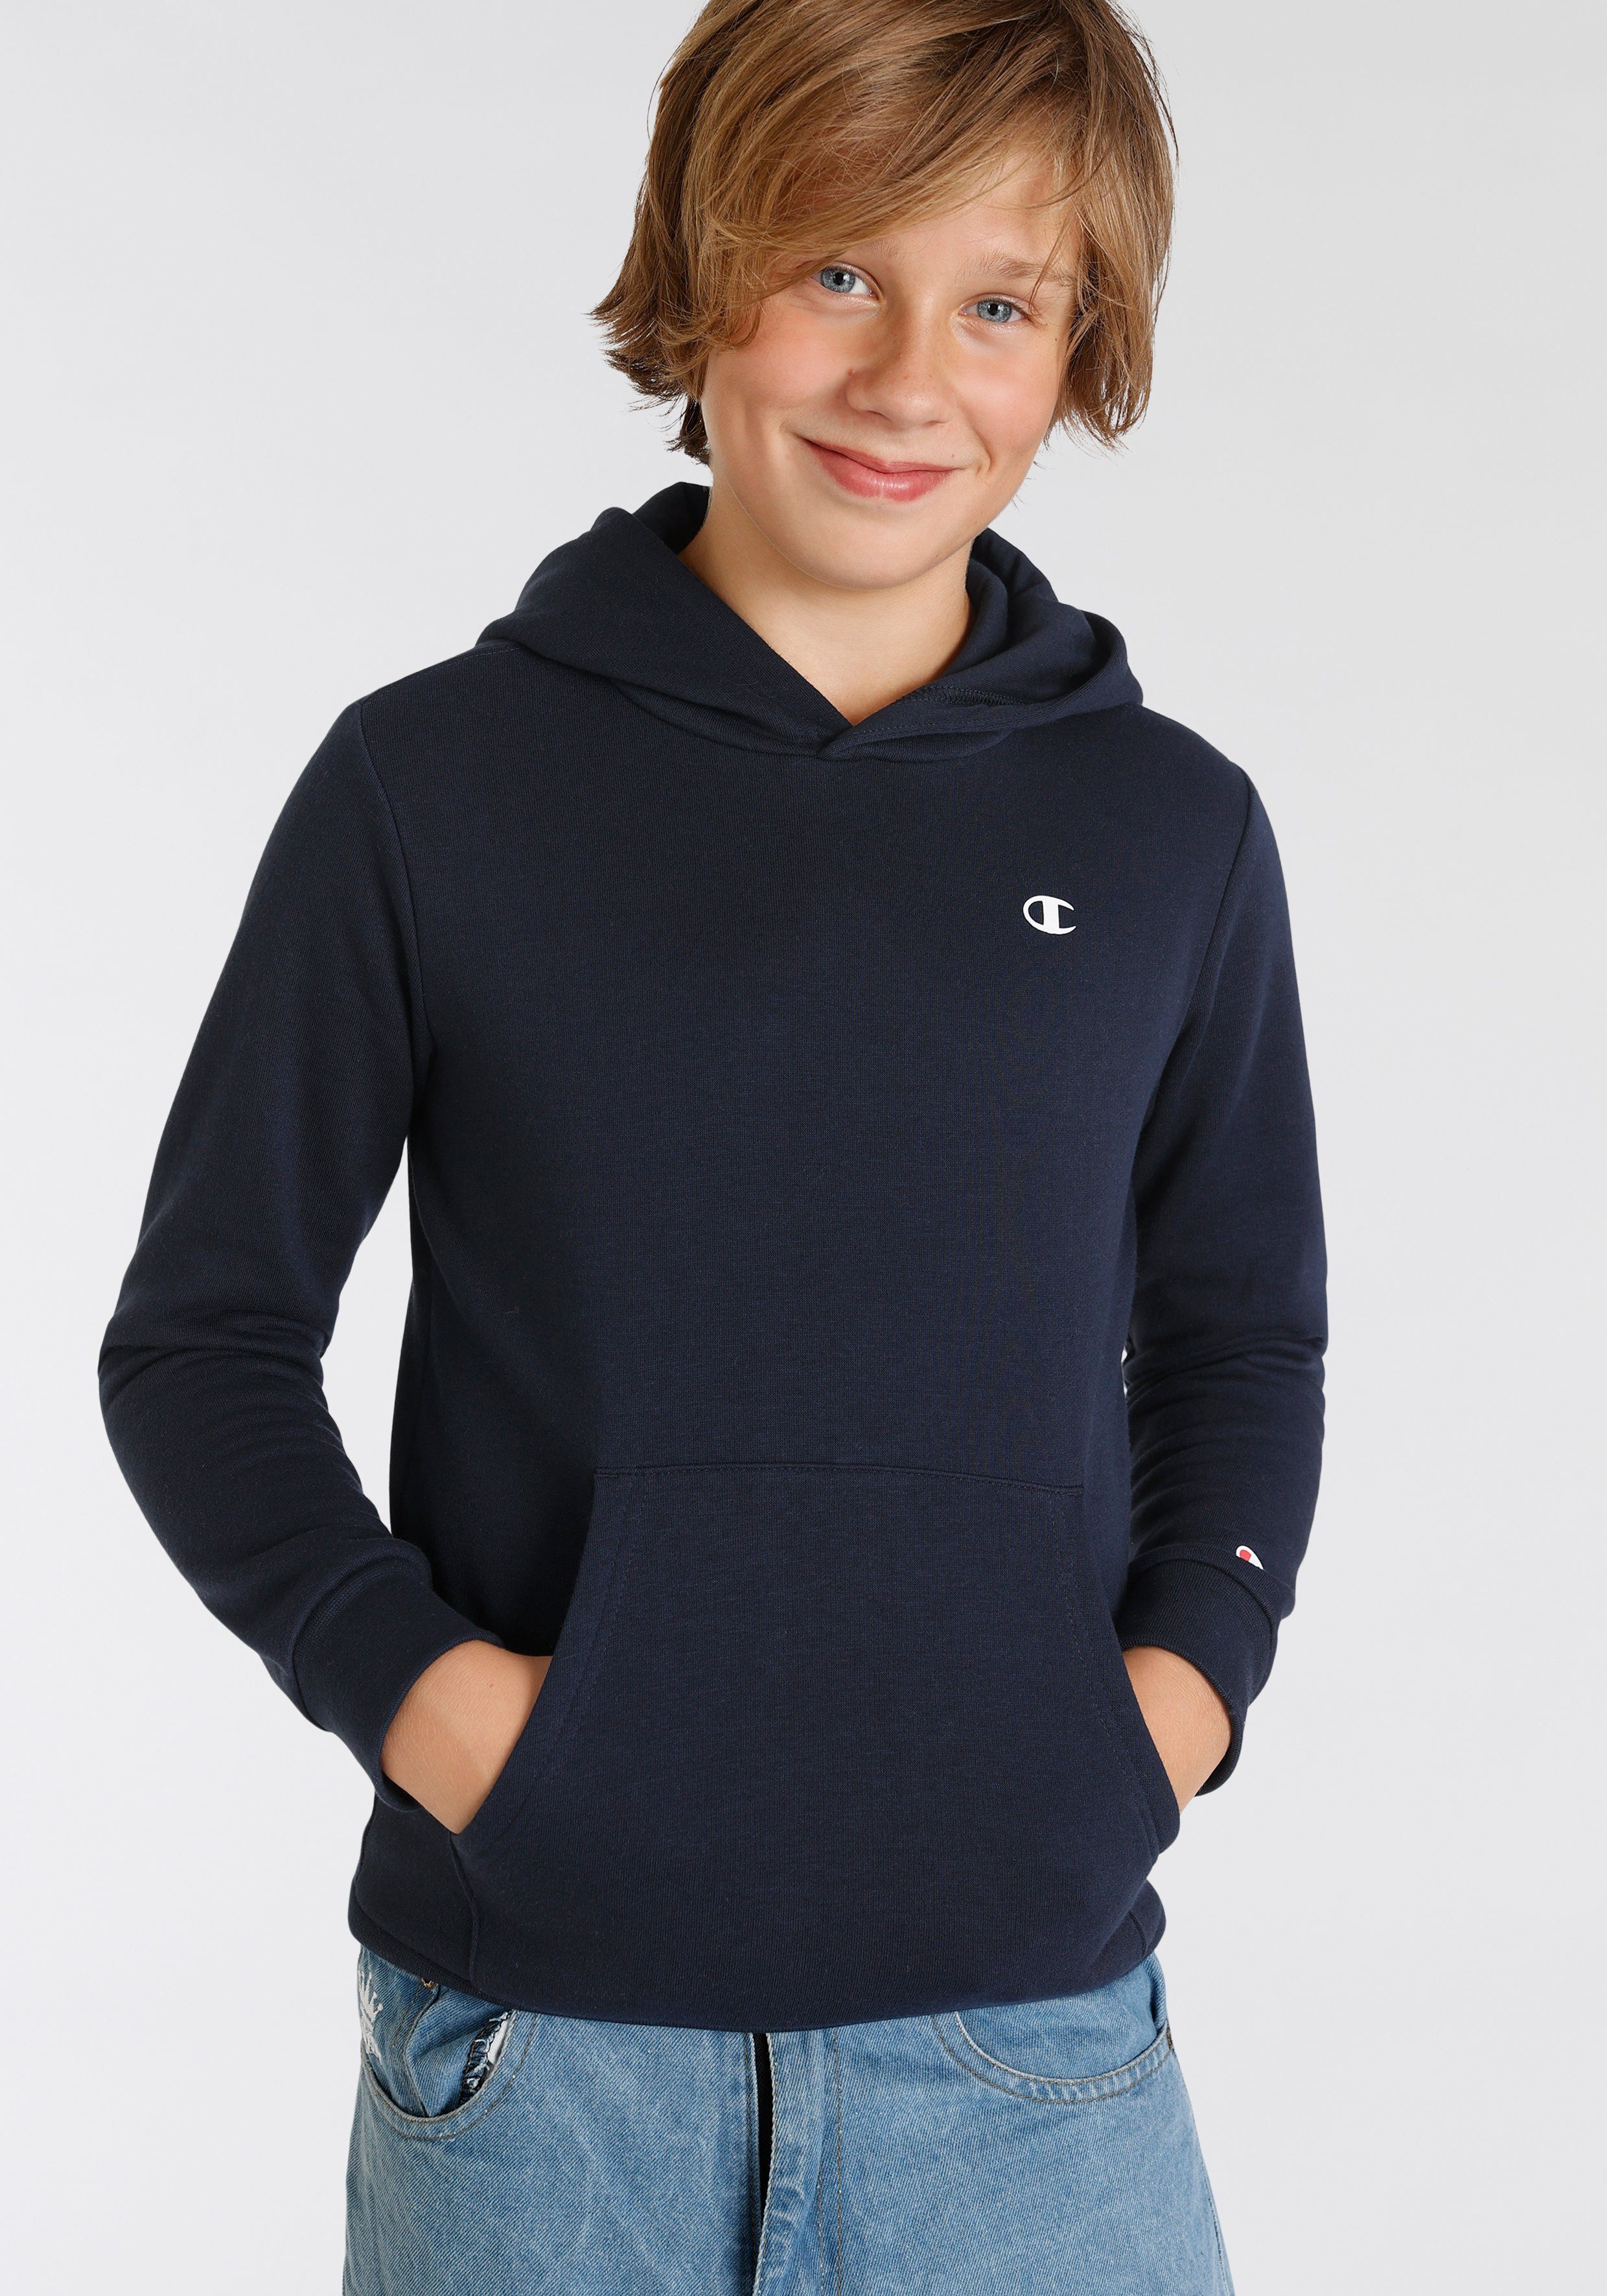 Champion Sweatshirt Basic Hooded für - Sweatshirt Kinder